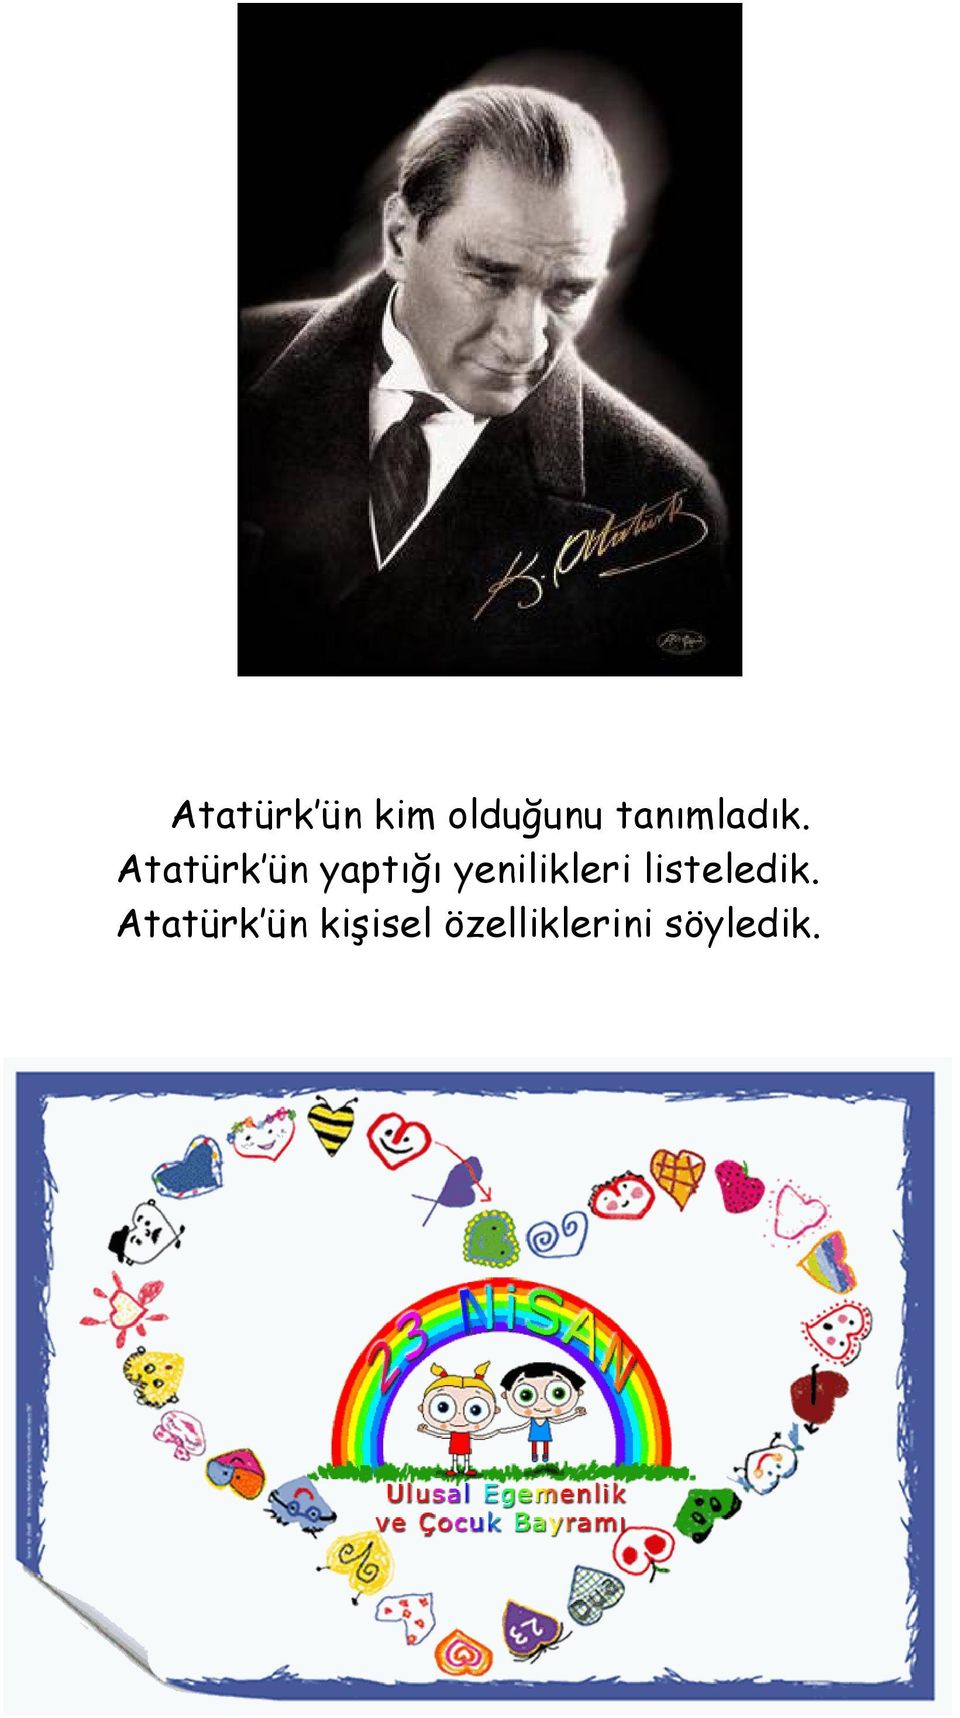 Atatürk ün yaptığı yenilikleri